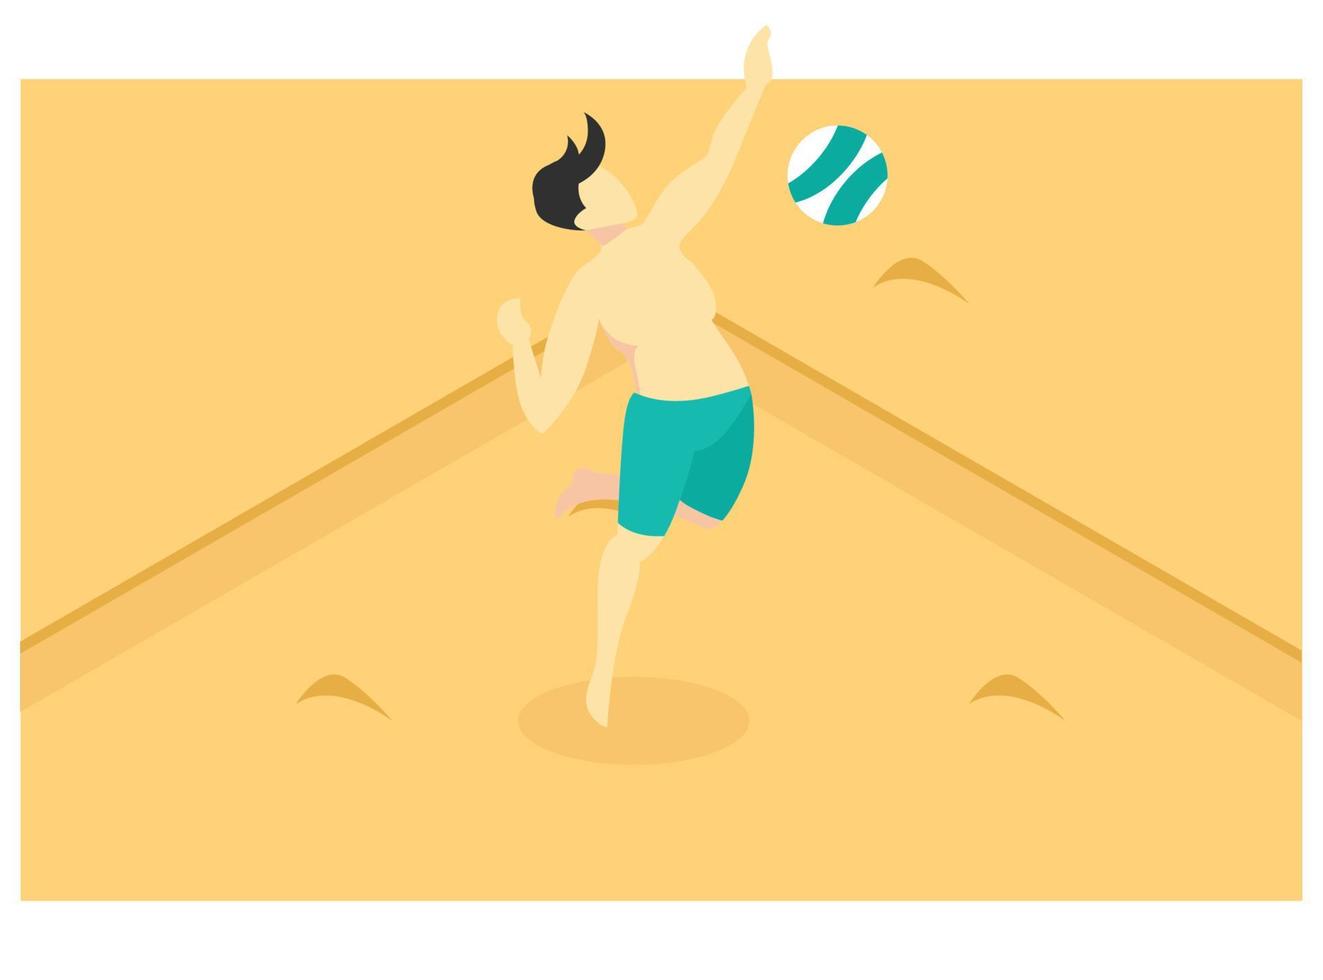 3d isométrique jouant au volley-ball de plage sur le sable brun de la plage. illustration isométrique vectorielle adaptée aux diagrammes, infographies et autres éléments graphiques vecteur